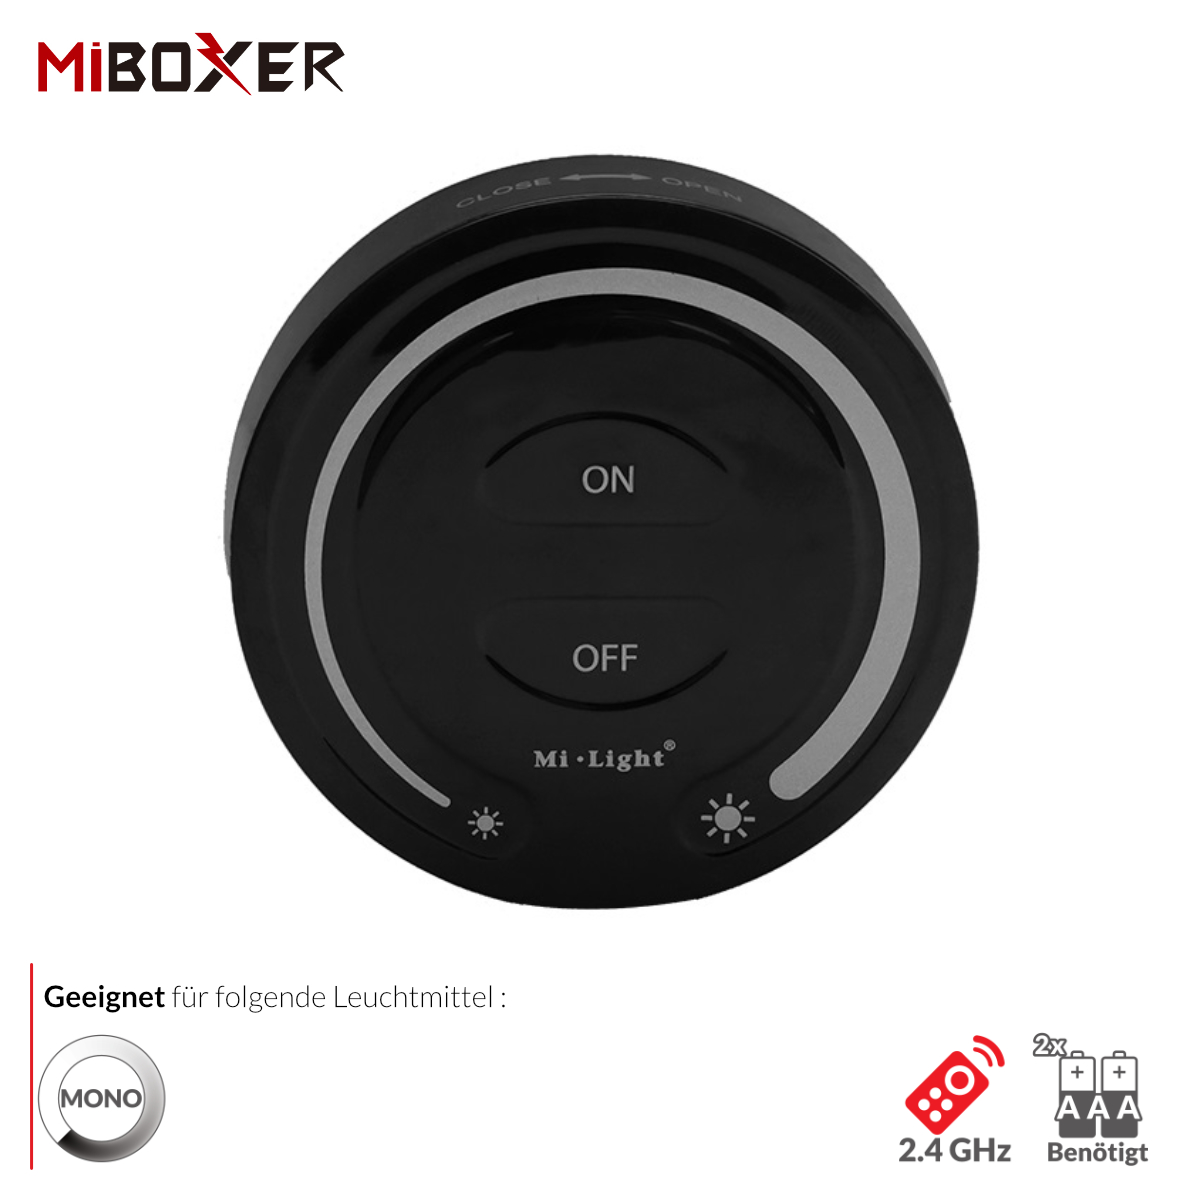 Schwarze 2.4G Fernbedingung / Wandschalter Mi-Light für | Miboxer günstig Profile alu-profile-led.de Dimmer (batteriebetrieben) / kaufen Aluminium FUT087-B online - einfarbige LED-Beleuchtung